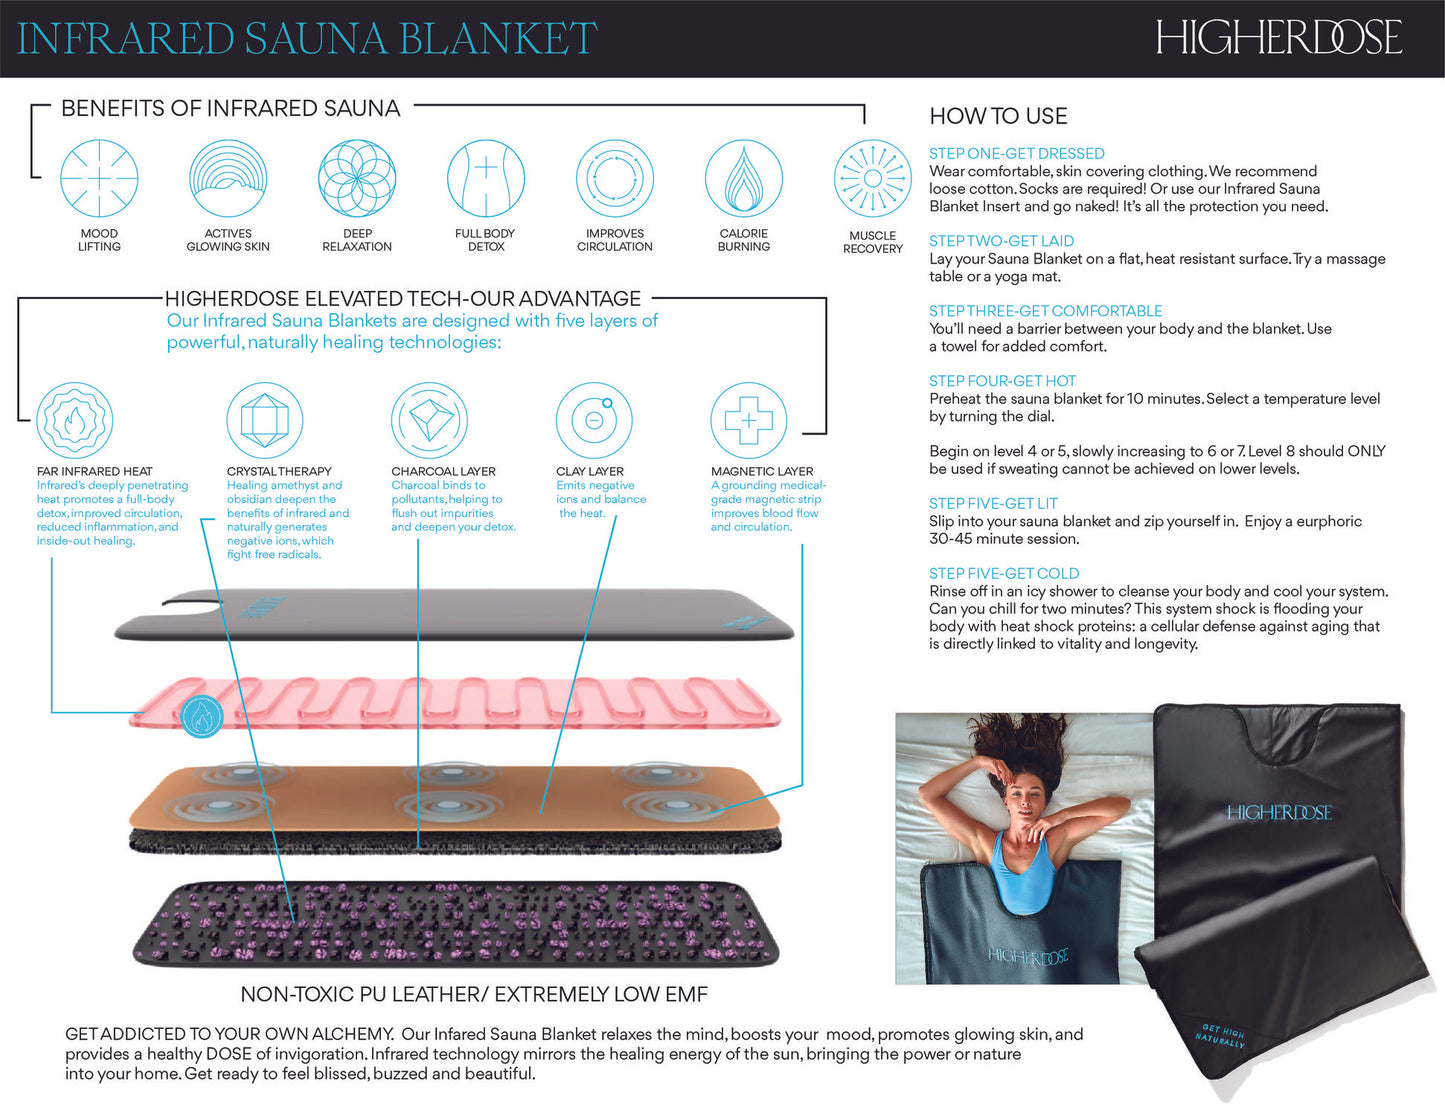 HigherDOSE higher dose portable infrared sauna blanket V4 black how to use benefits of sauna blanket